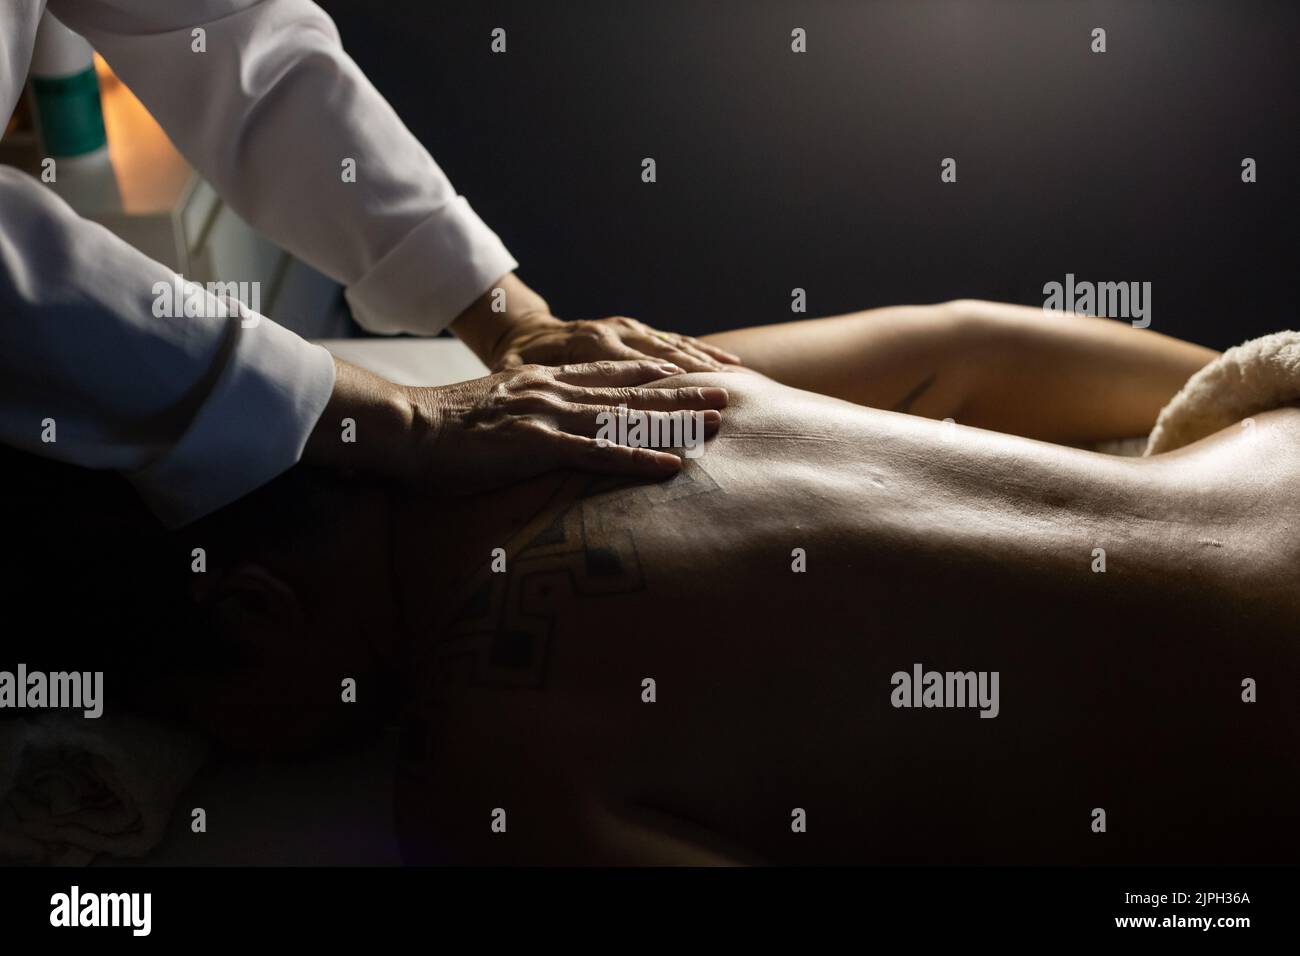 Goiânia, Goias, Brasilien – 18. Juli 2022: Detail eines Massagetherapeuten, der den Rücken eines Patienten massiert, der auf einer Bahre liegt. Dunkler Hintergrund. Stockfoto